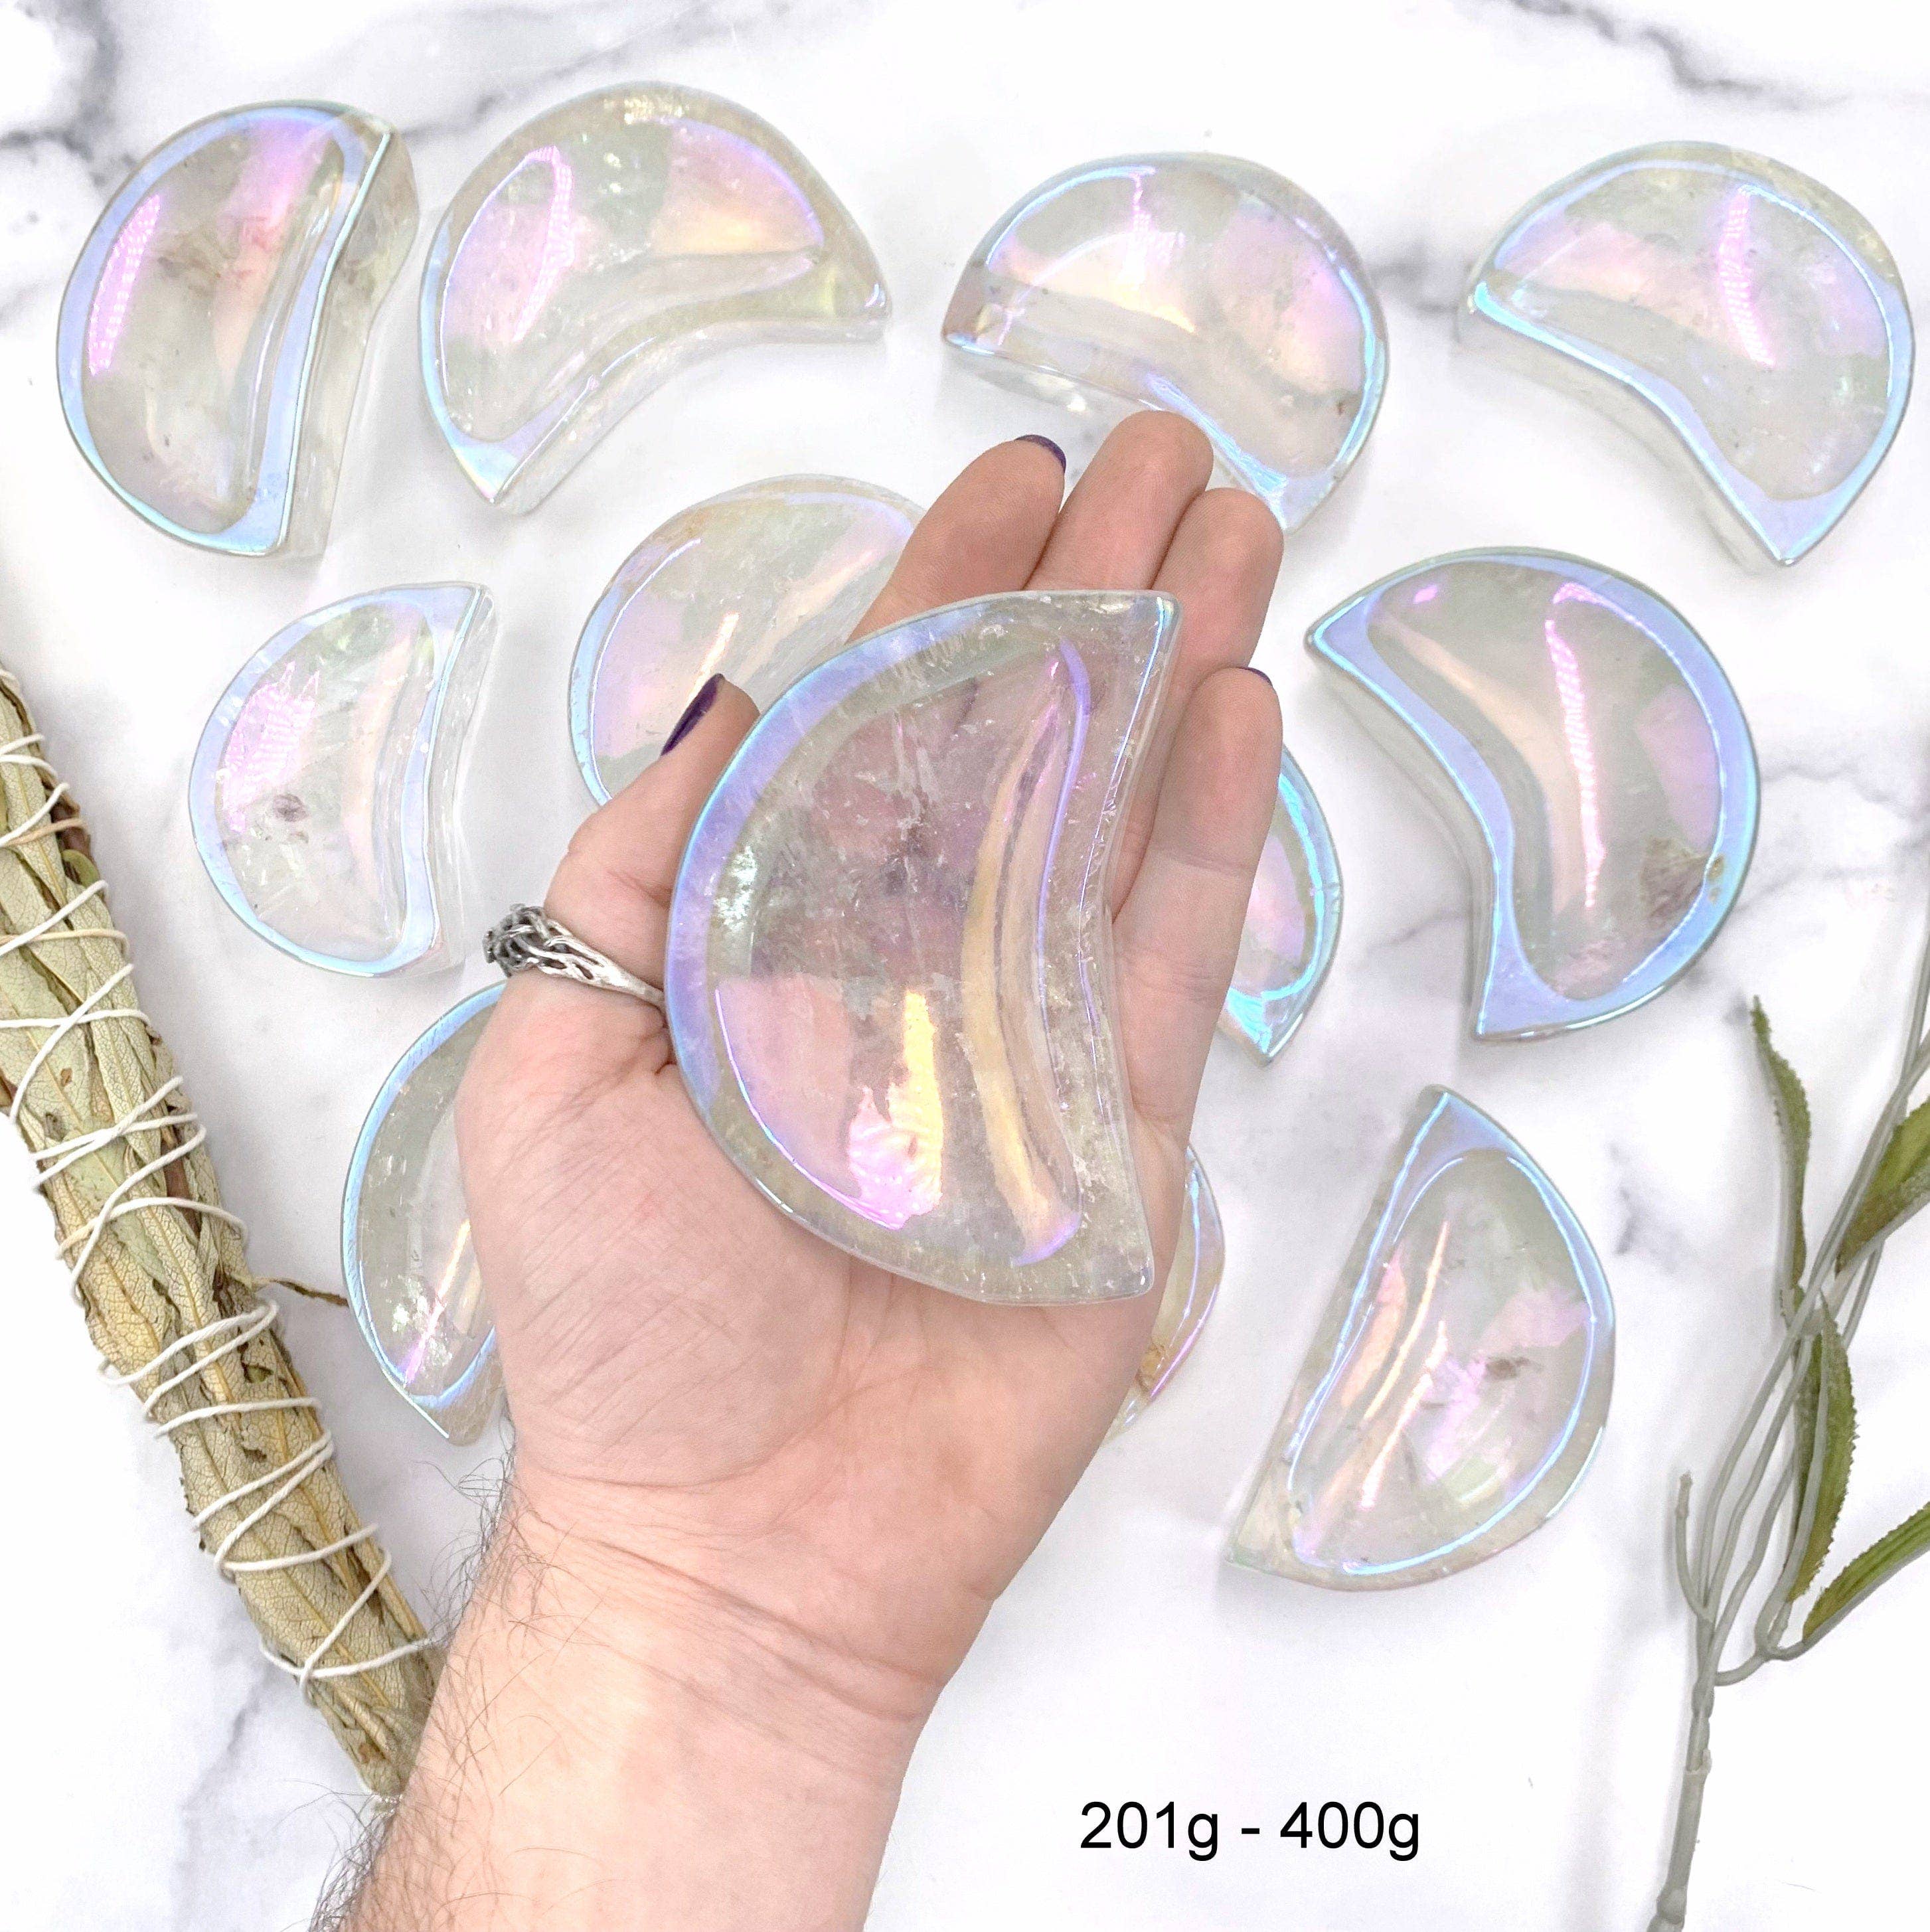 Angel Aura Crystal Quartz Moon Bowls: 201g - 400g